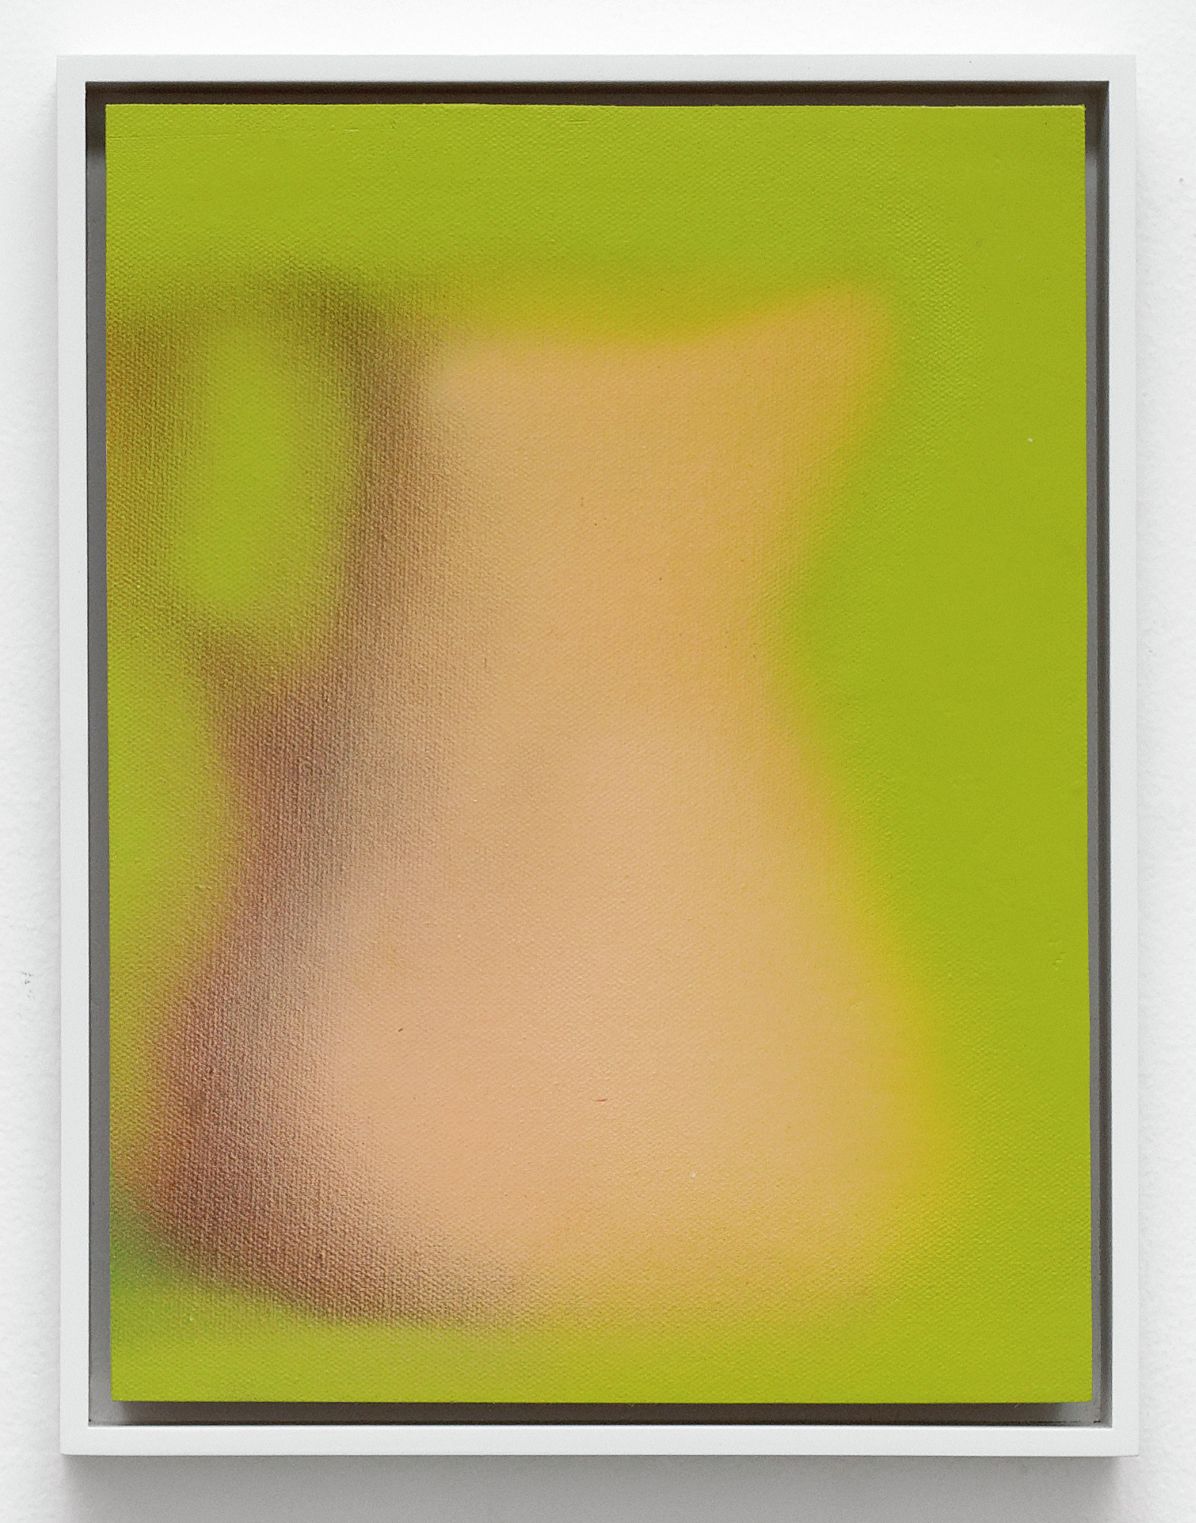 Kevin Ford, Pitcher, 2016 Acrylique sur lin marouflé sur panneau30 × 23 cm / 12 × 9 in. | 32.5 × 25 × 4 cm / 12 6/8 × 9 7/8 × 1 5/8 in. (encadré/framed)